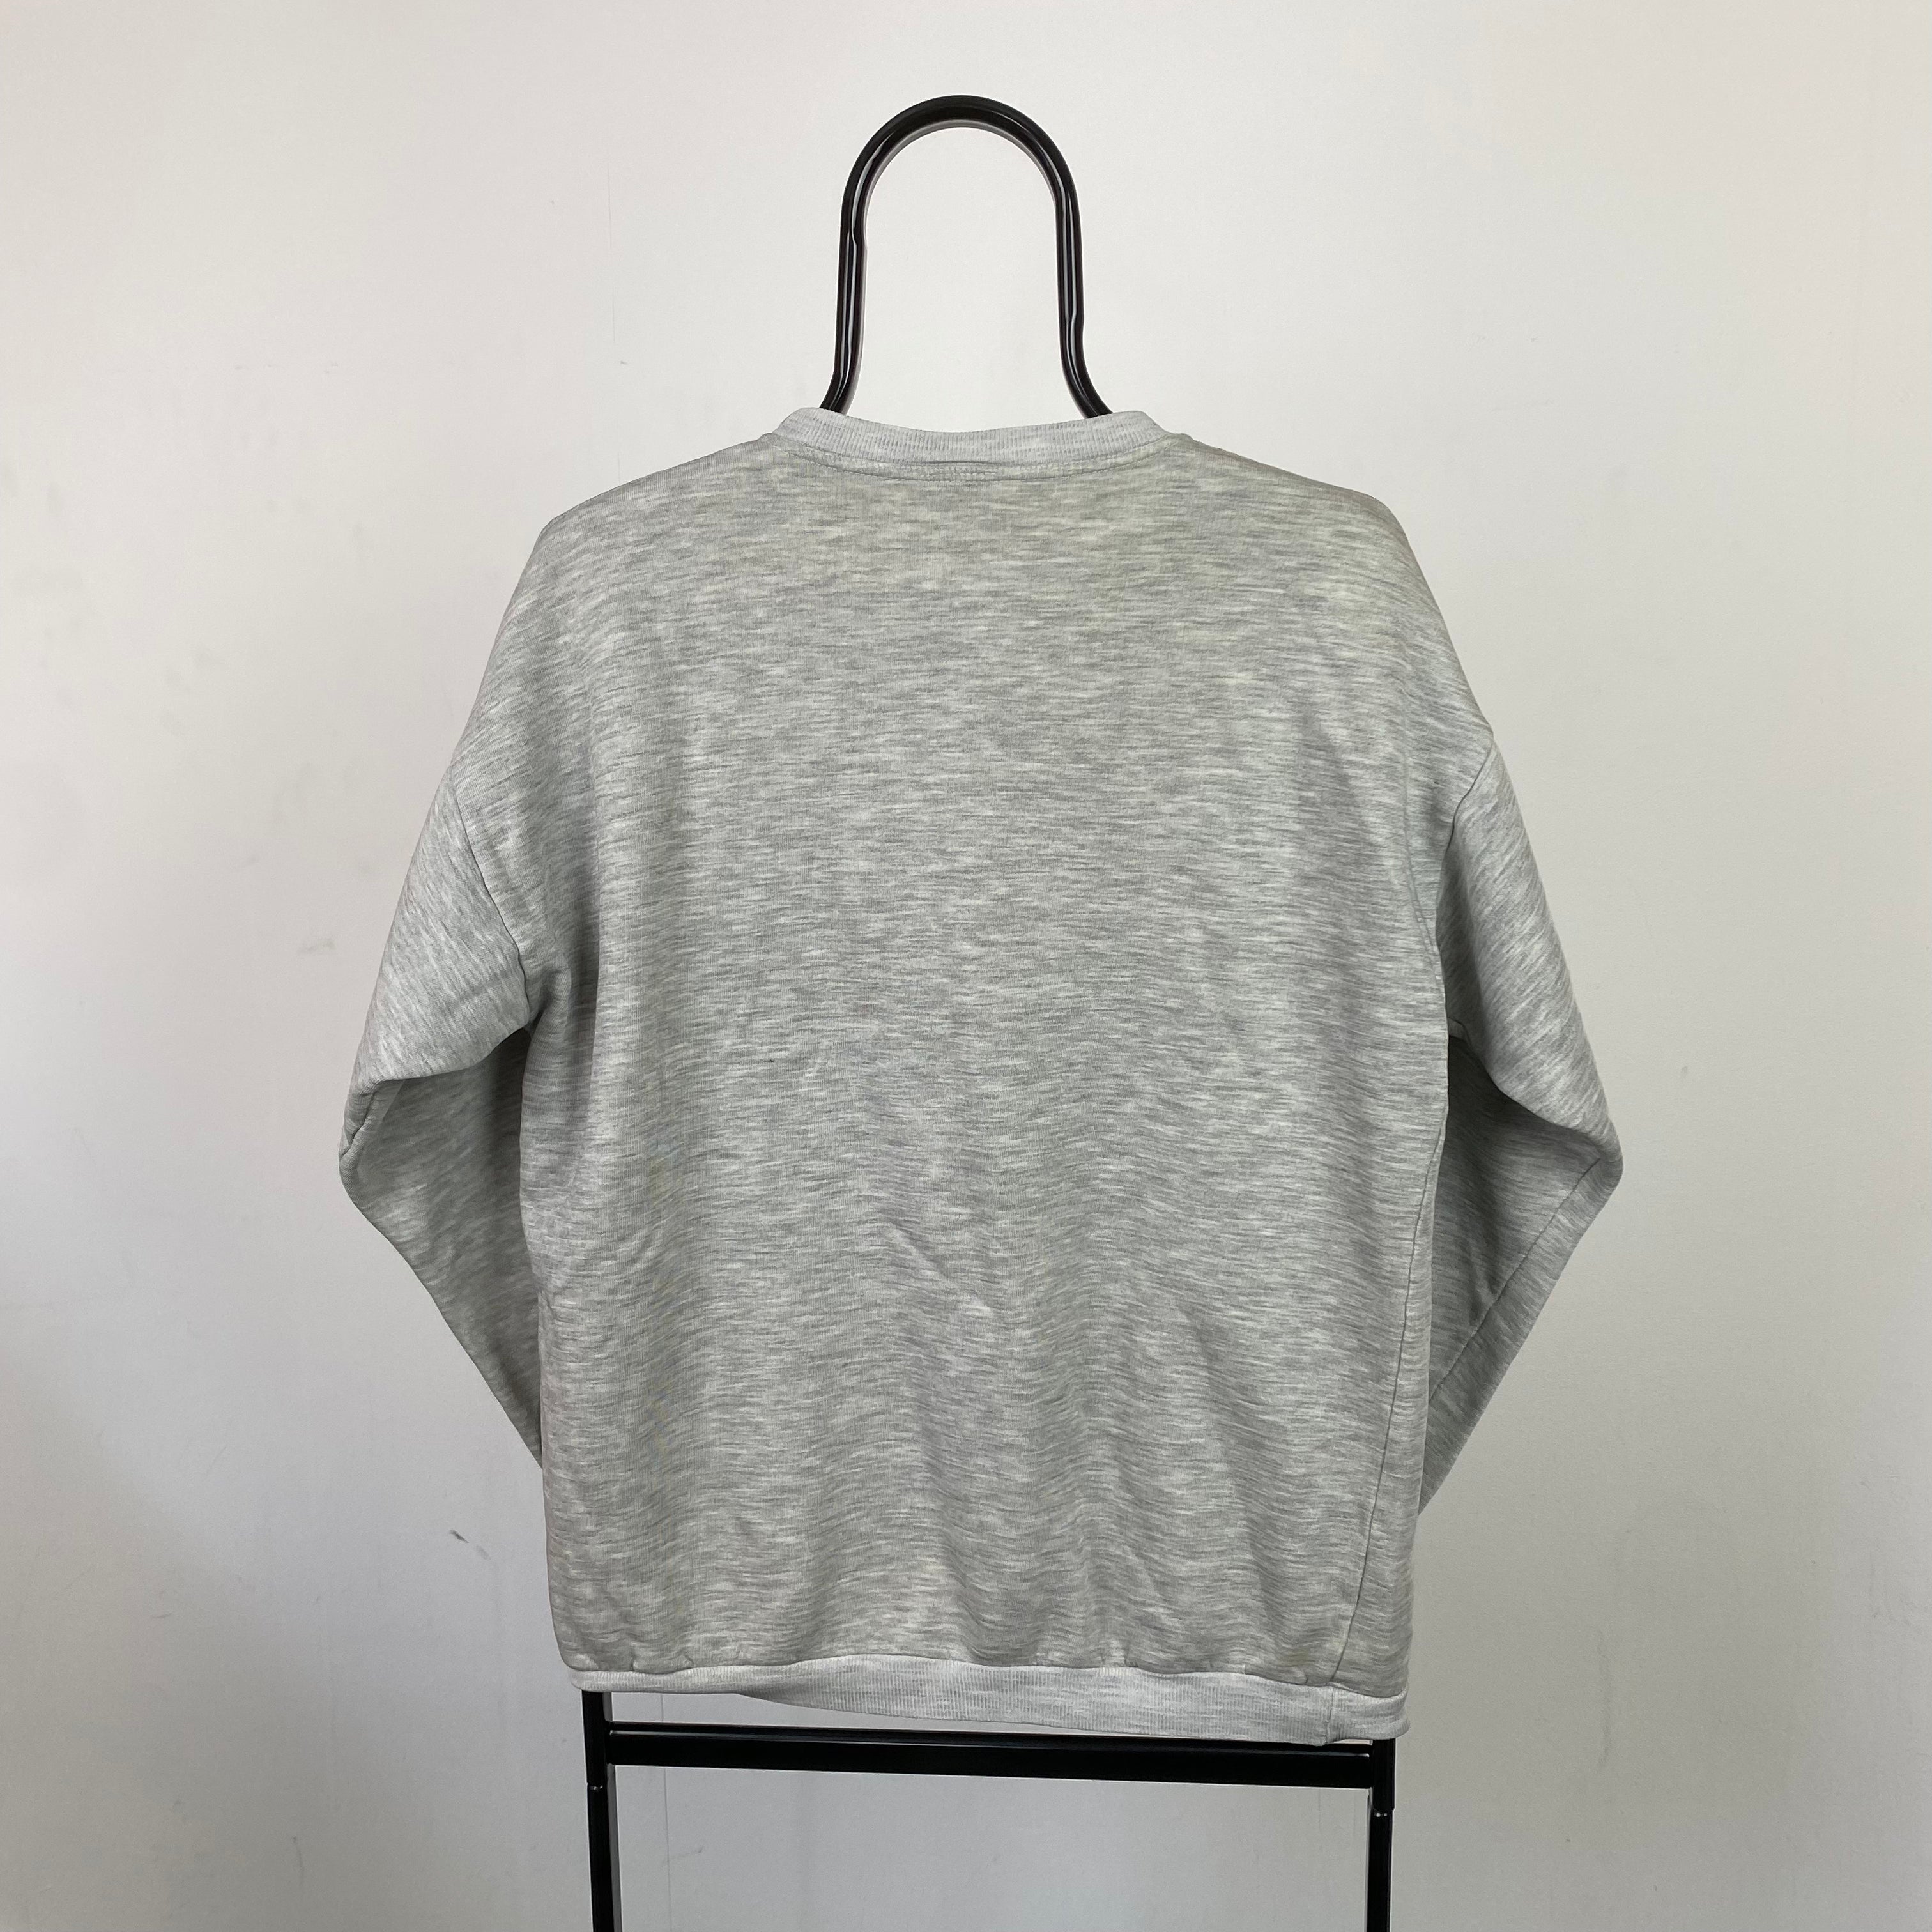 Vintage Ellesse Sweatshirt Grey Small